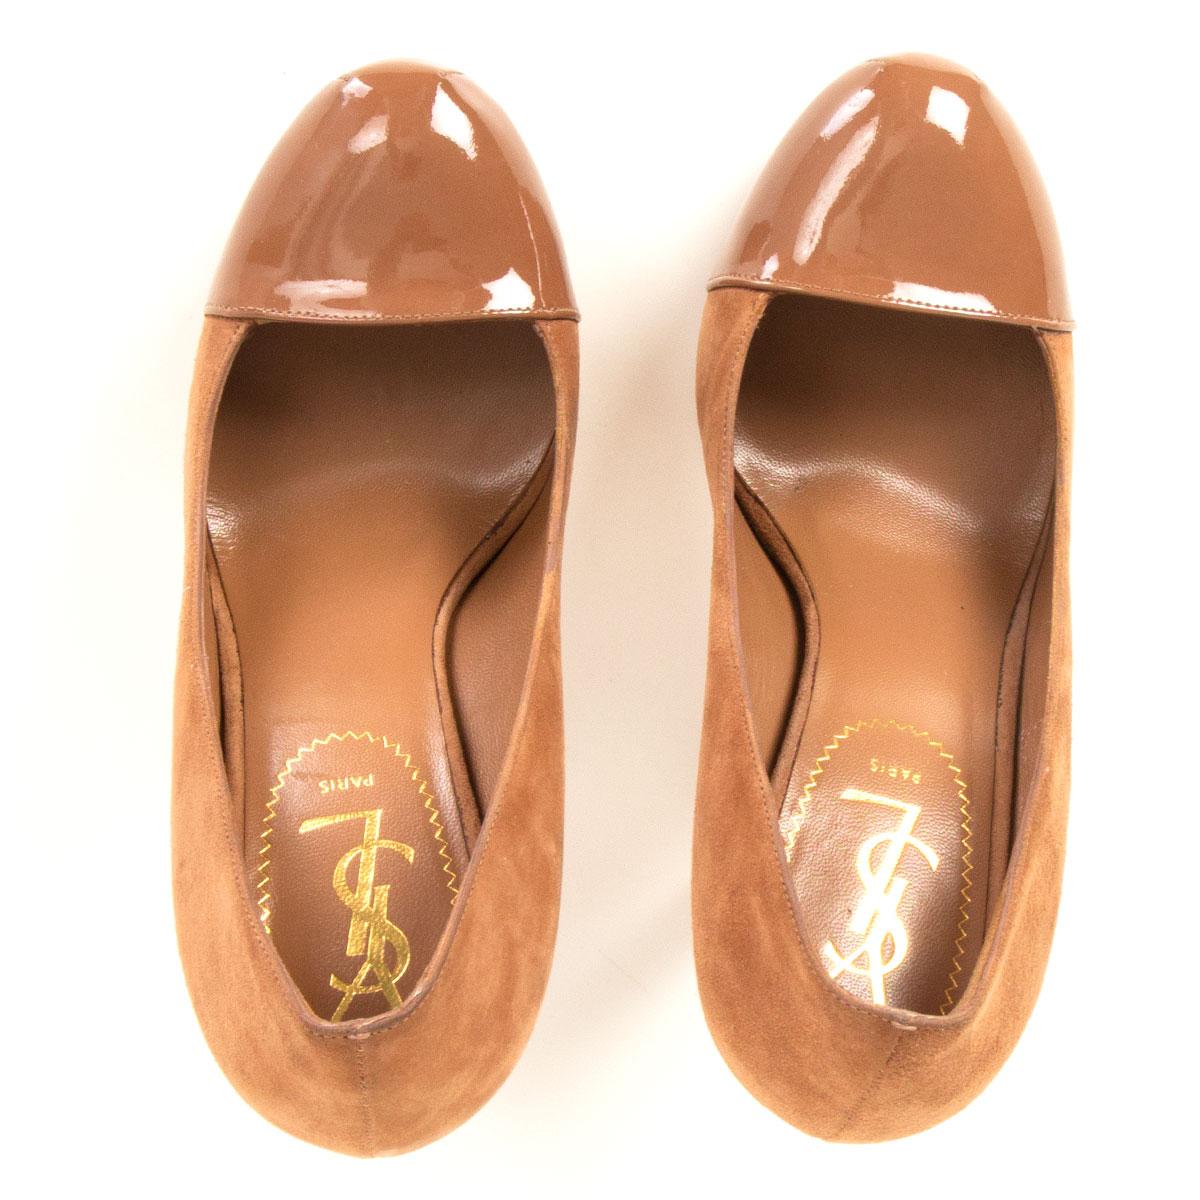 Chaussures à plateforme TRIBTOO YVES SAINT LAURENT en daim beige et brevet 36 Pour femmes en vente